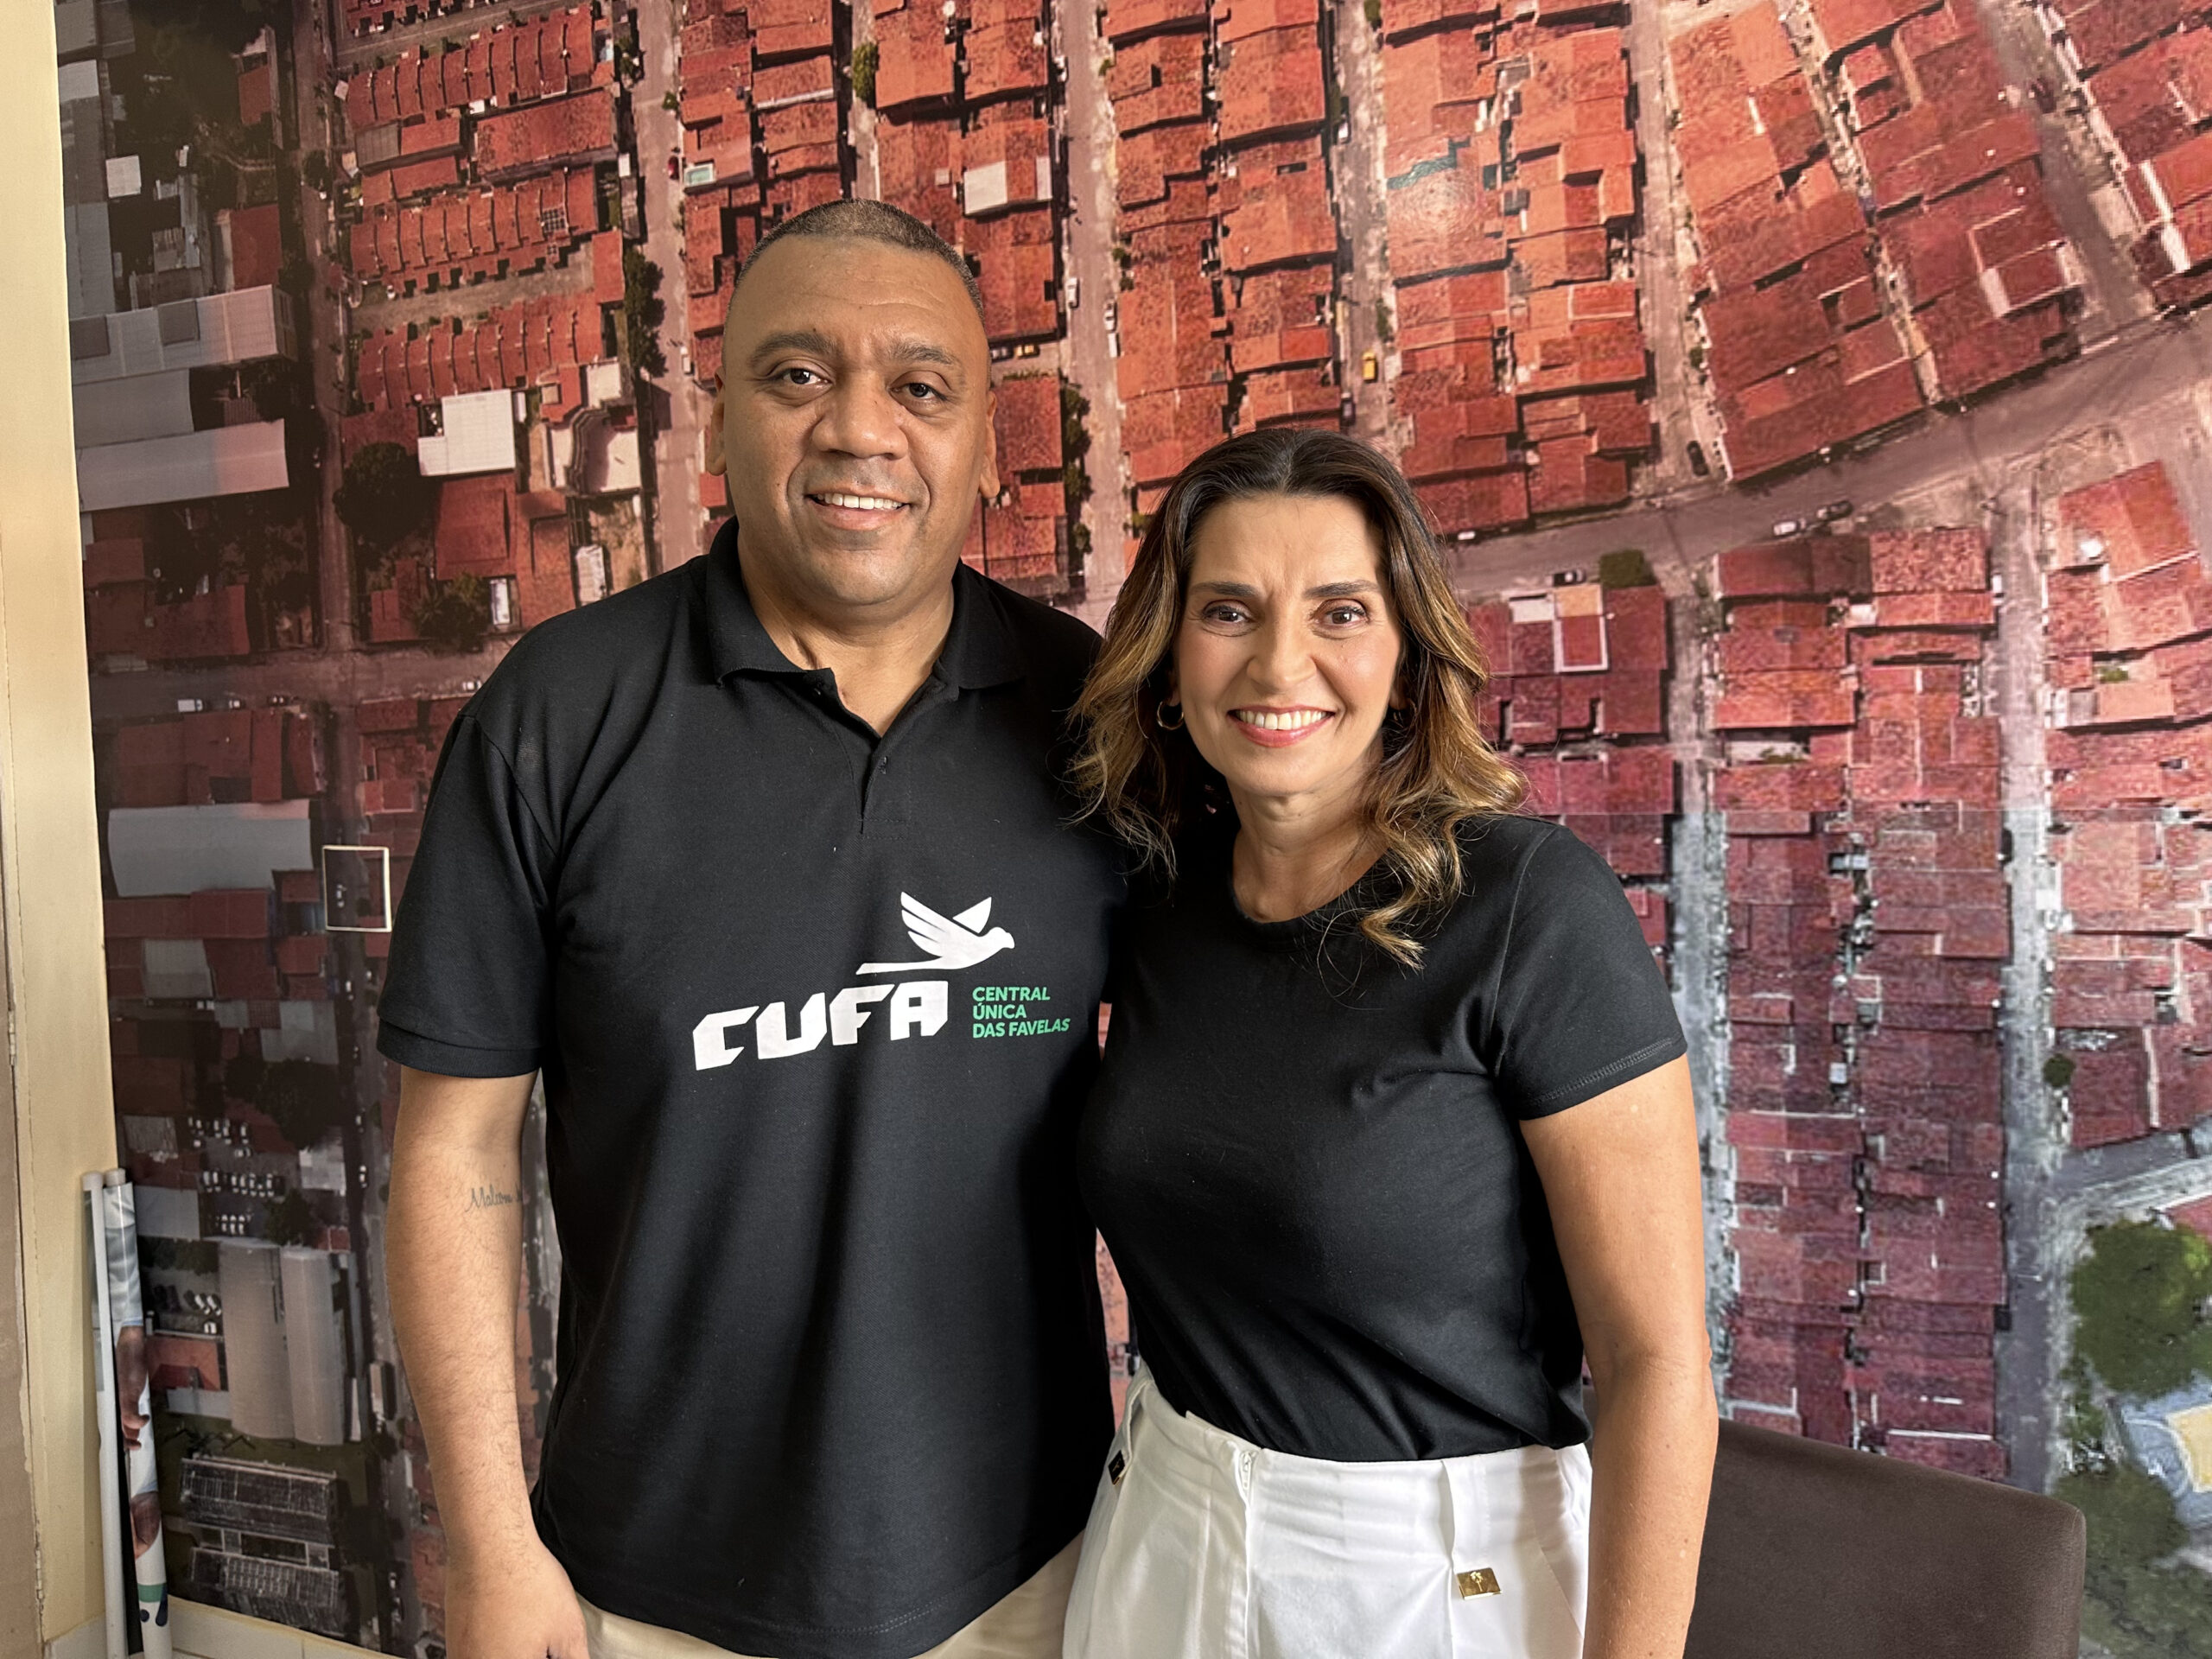 Preto Zezé fala sobre ações da Cufa e os preparativos para a Expo Favela no Ceará